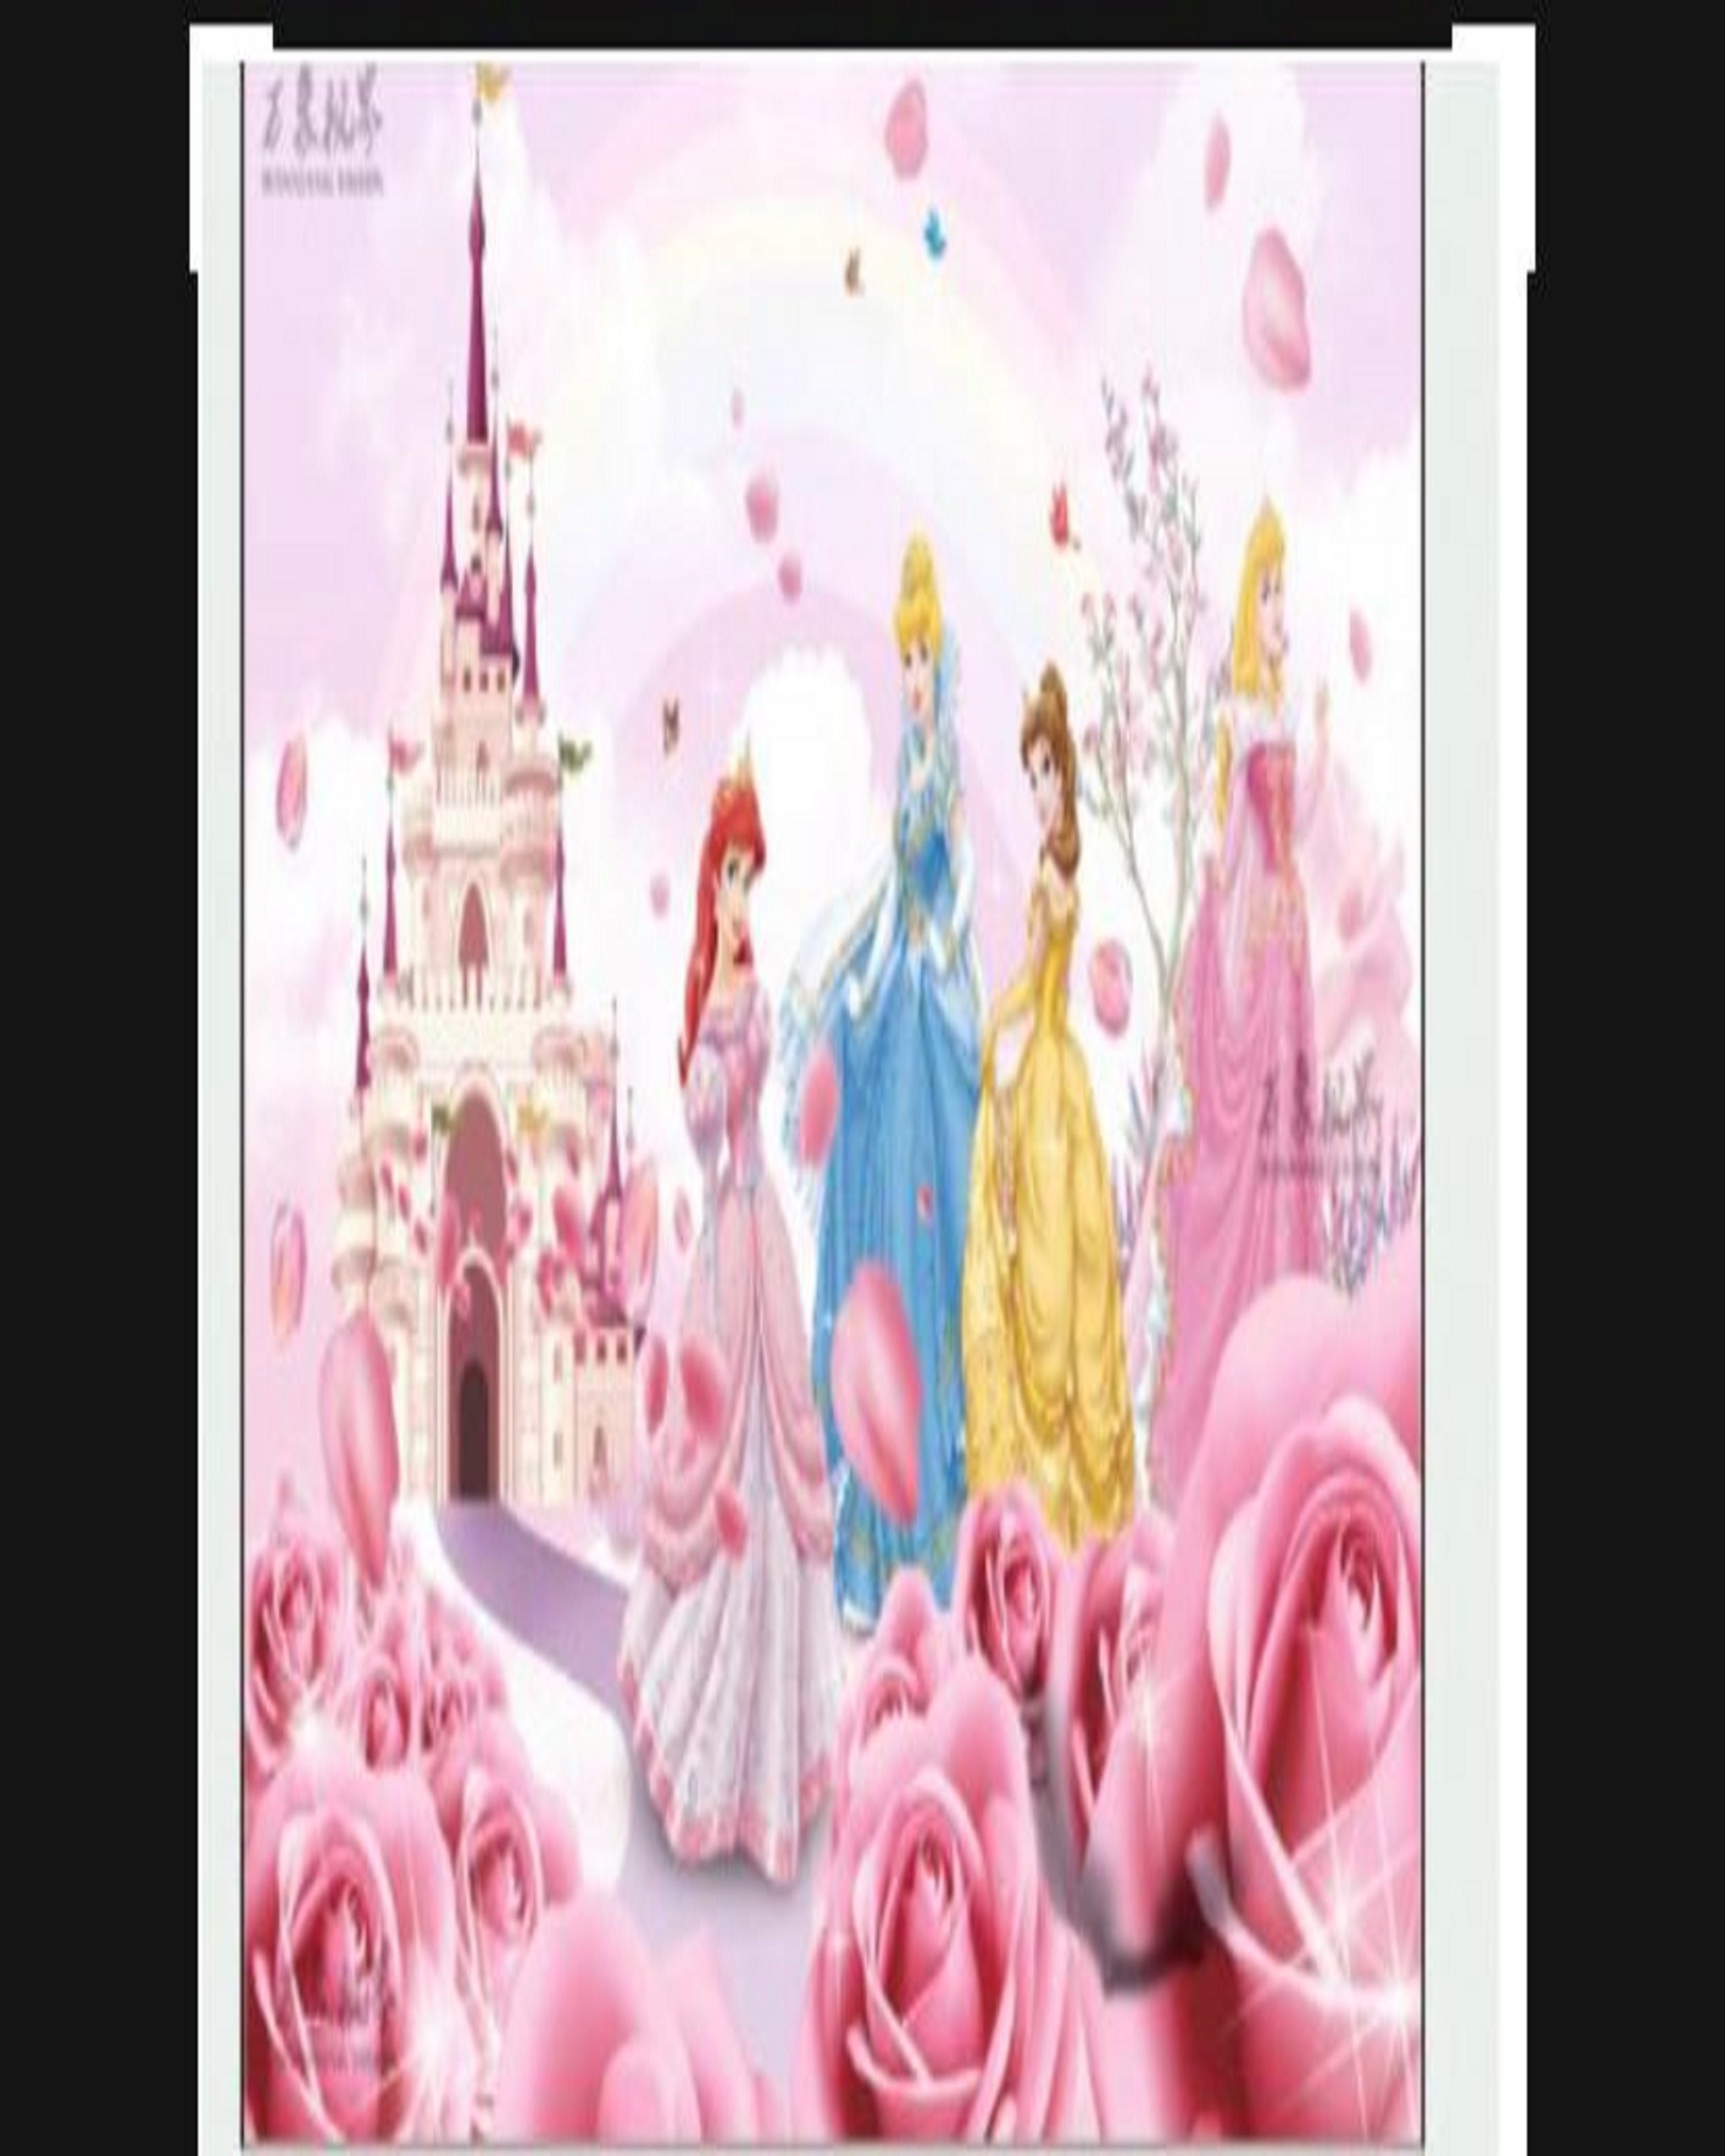 Belle, disney, princess, HD phone wallpaper | Peakpx